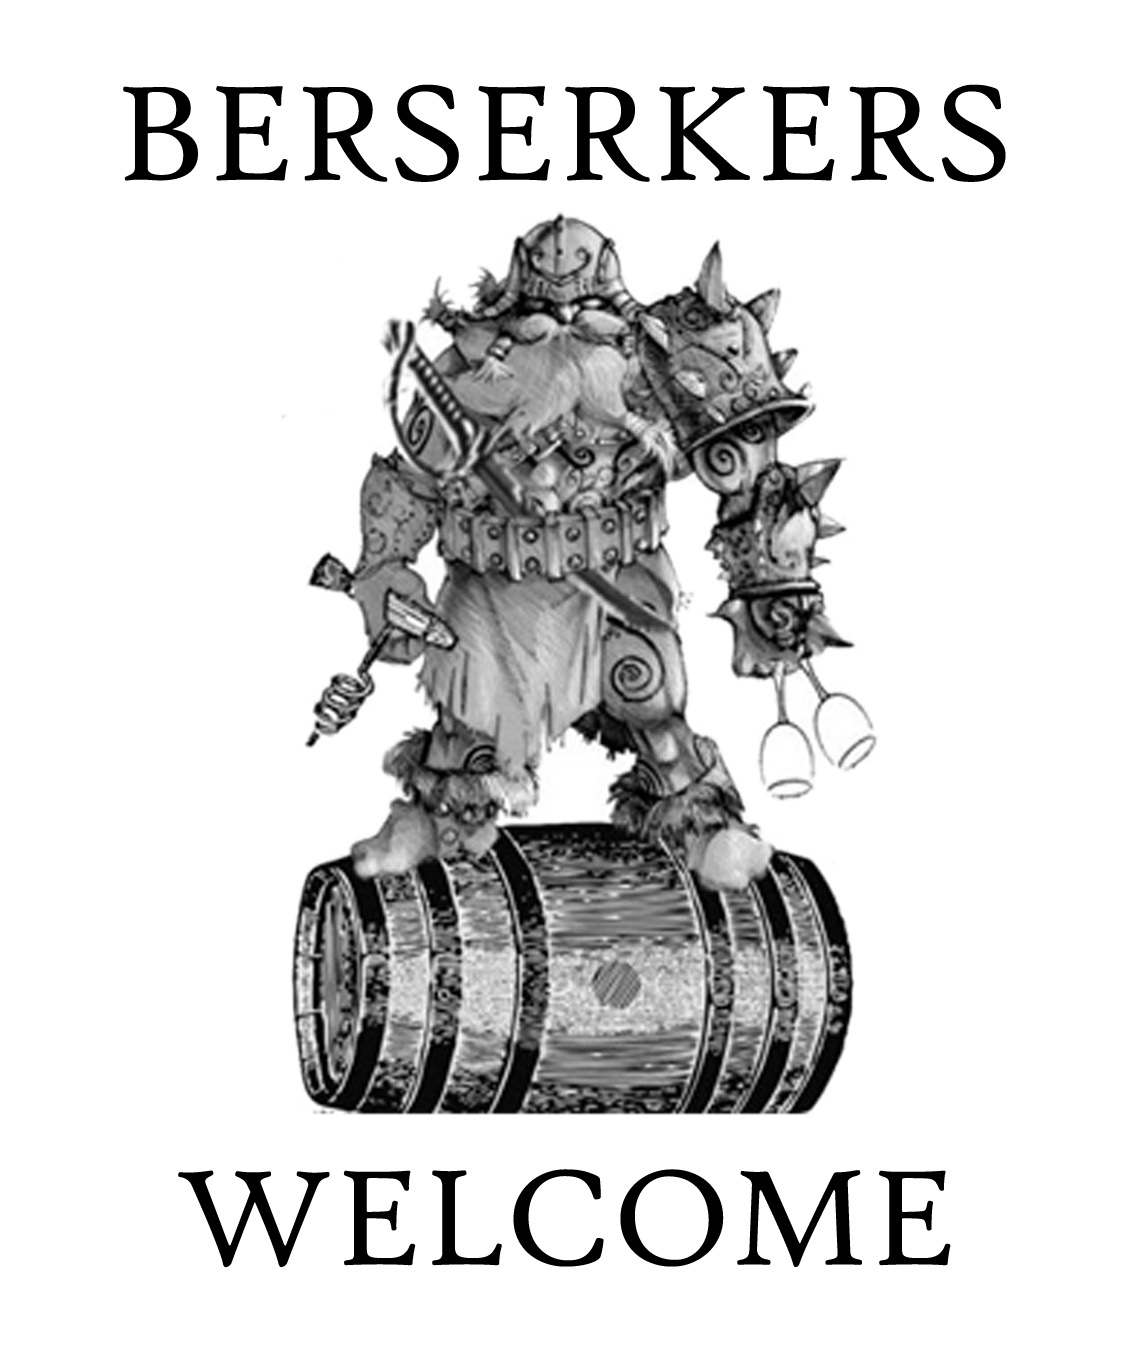 BerserkersWelcome.jpg